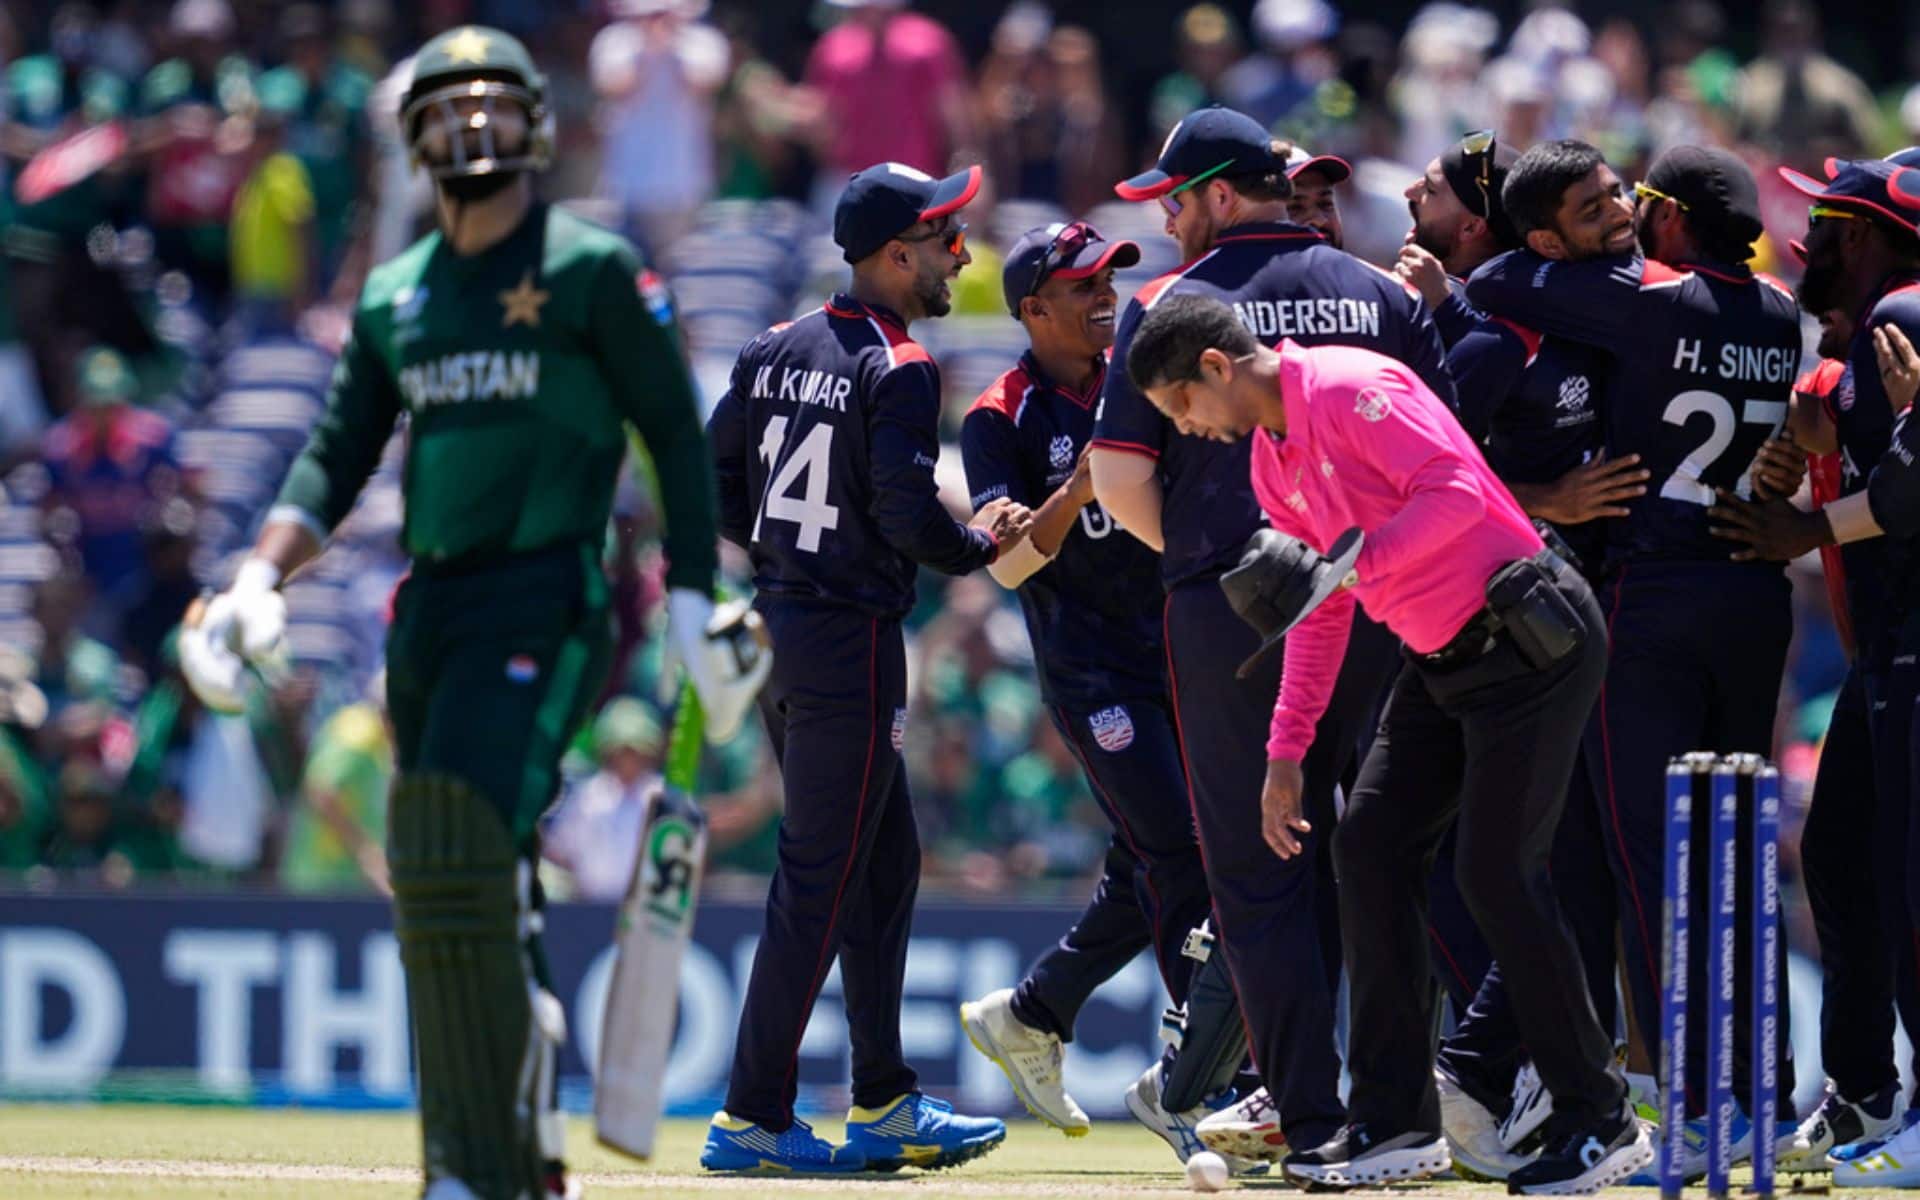 USA team celebrates after defeating Pakistan [AP Photo]